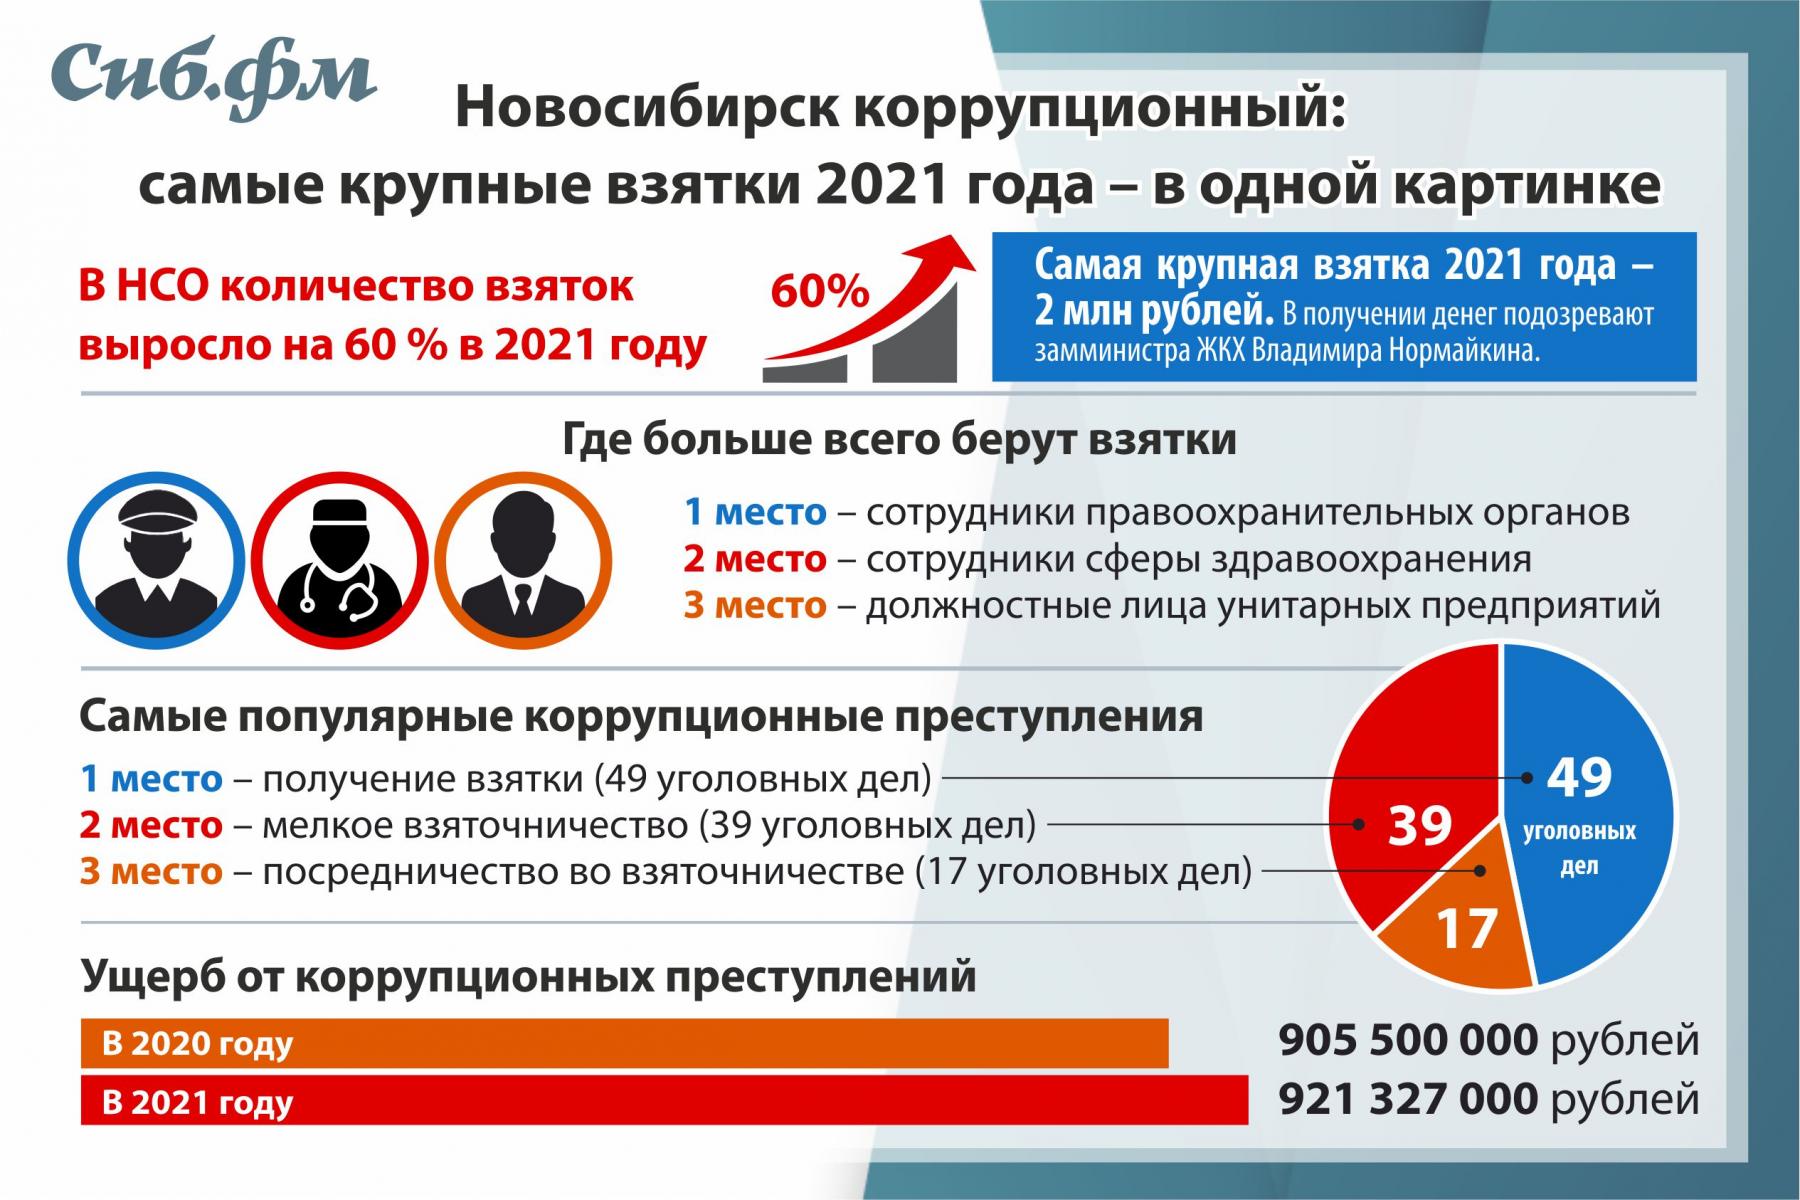 Фото Новосибирск коррупционный: в областной прокуратуре рассказали о самых крупных взятках 2021 года 2